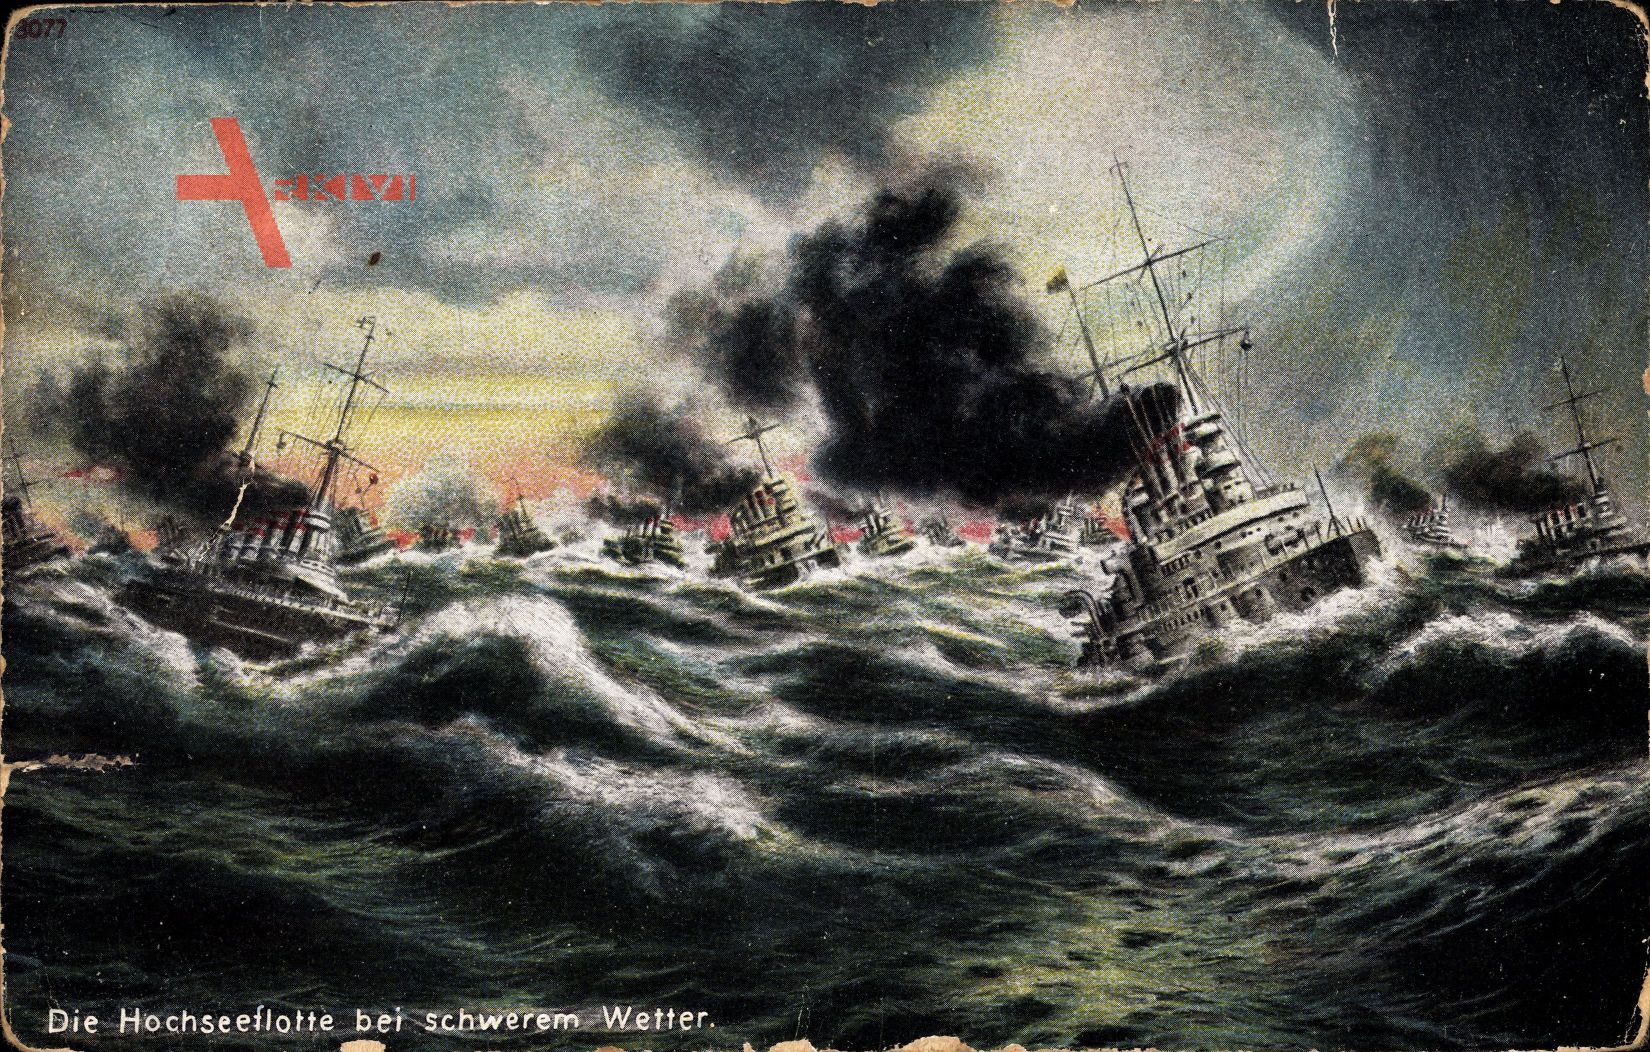 Deutsche Kriegsschiffe, Hochseeflotte bei schwerem Wetter